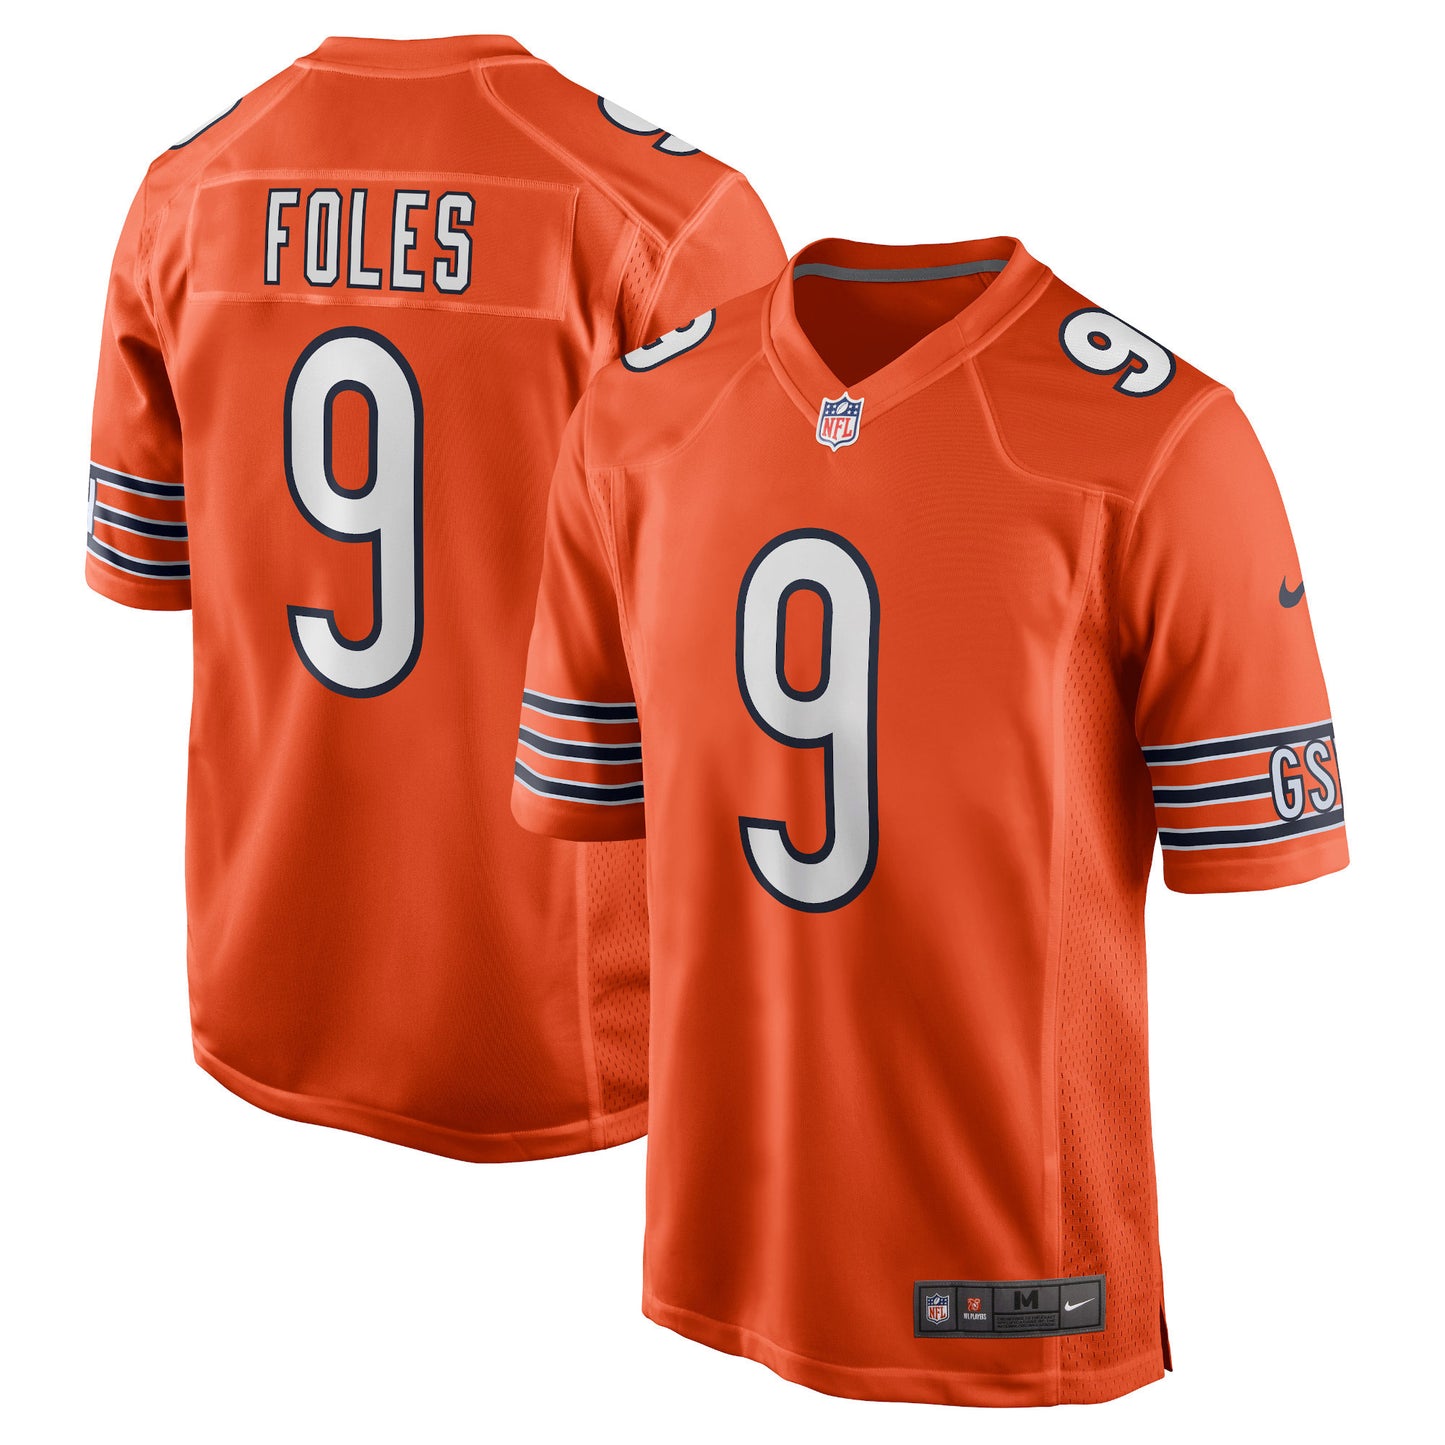 Nick Foles Chicago Bears Nike Game Jersey - Orange